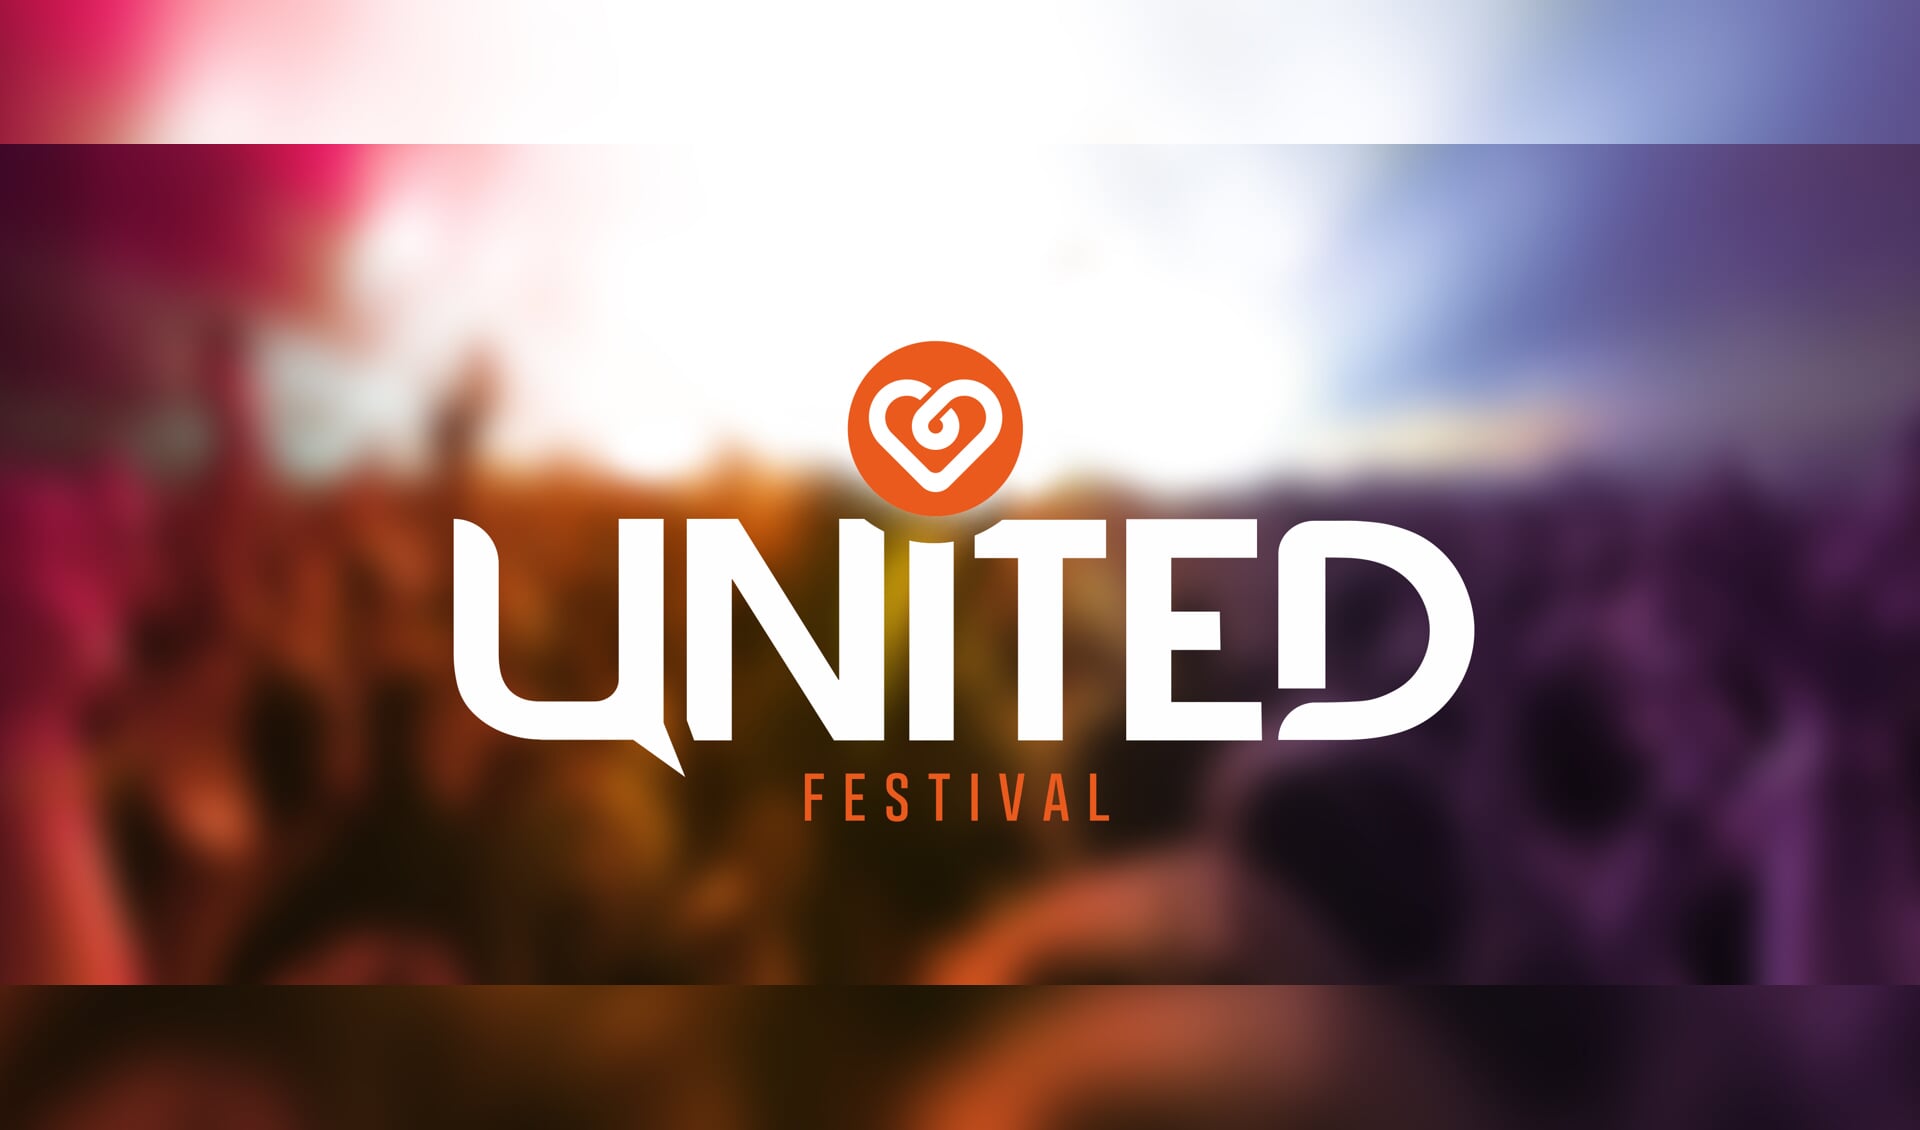 Festival Uden, oftewel United Festival, wordt dit jaar voor het eerst georganiseerd.